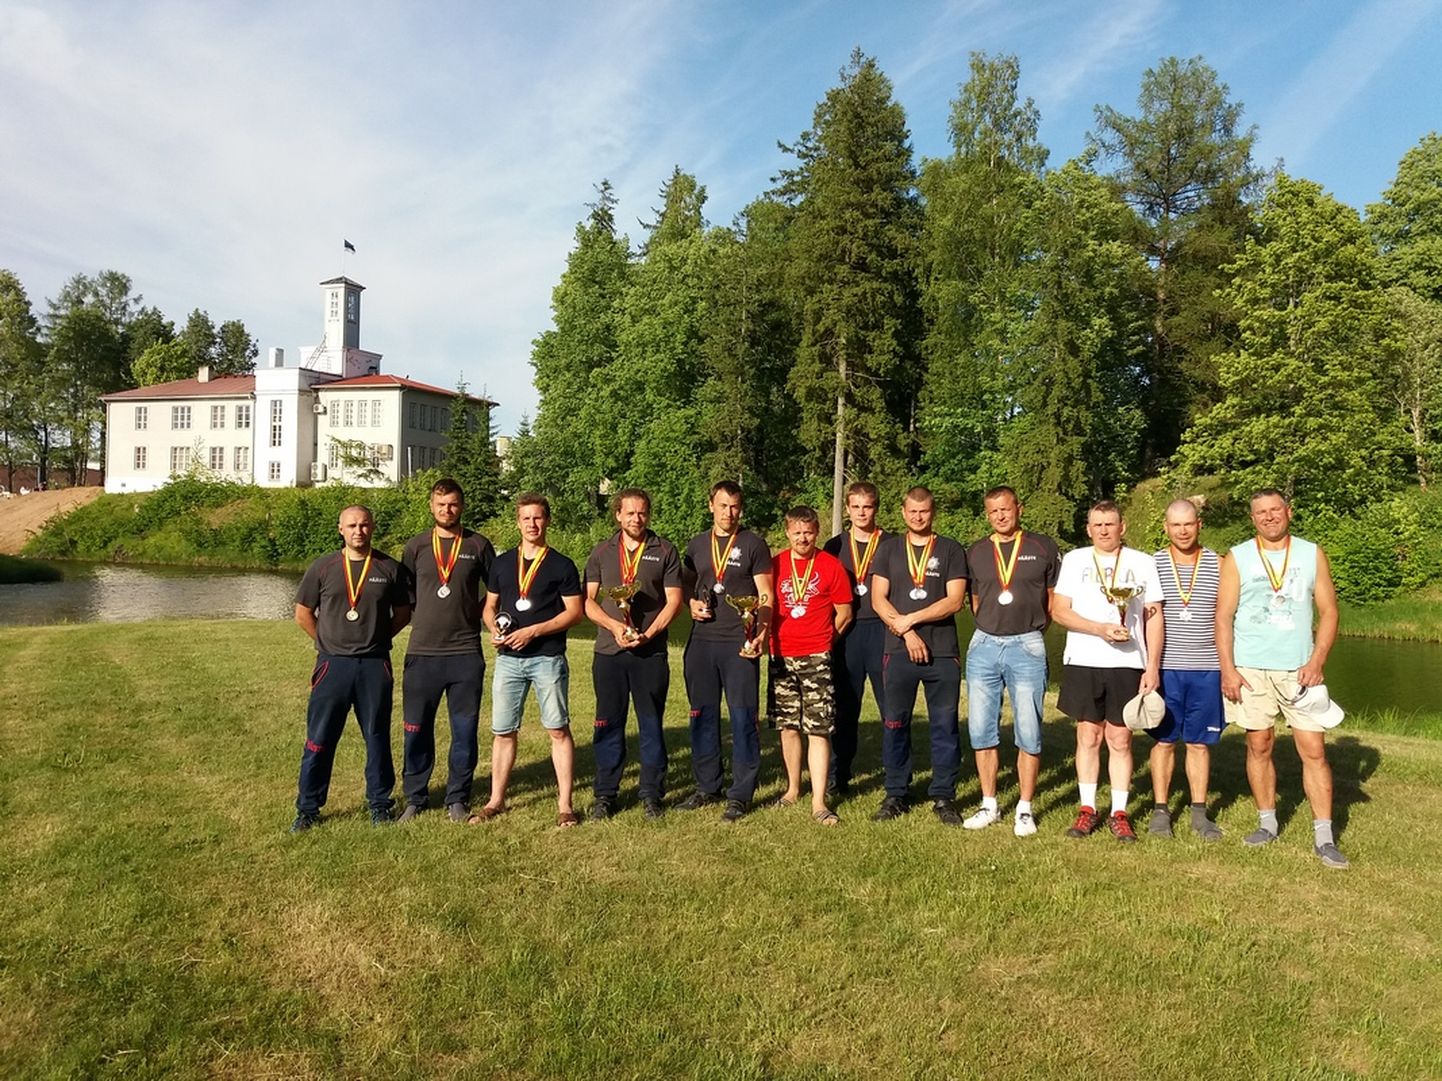 Võistluse parim olid Viljandi komando mehed (keskel). Teiseks tulid Tartu Annelinna päästjad (vasakul), kolmandaks Põlva mehed.